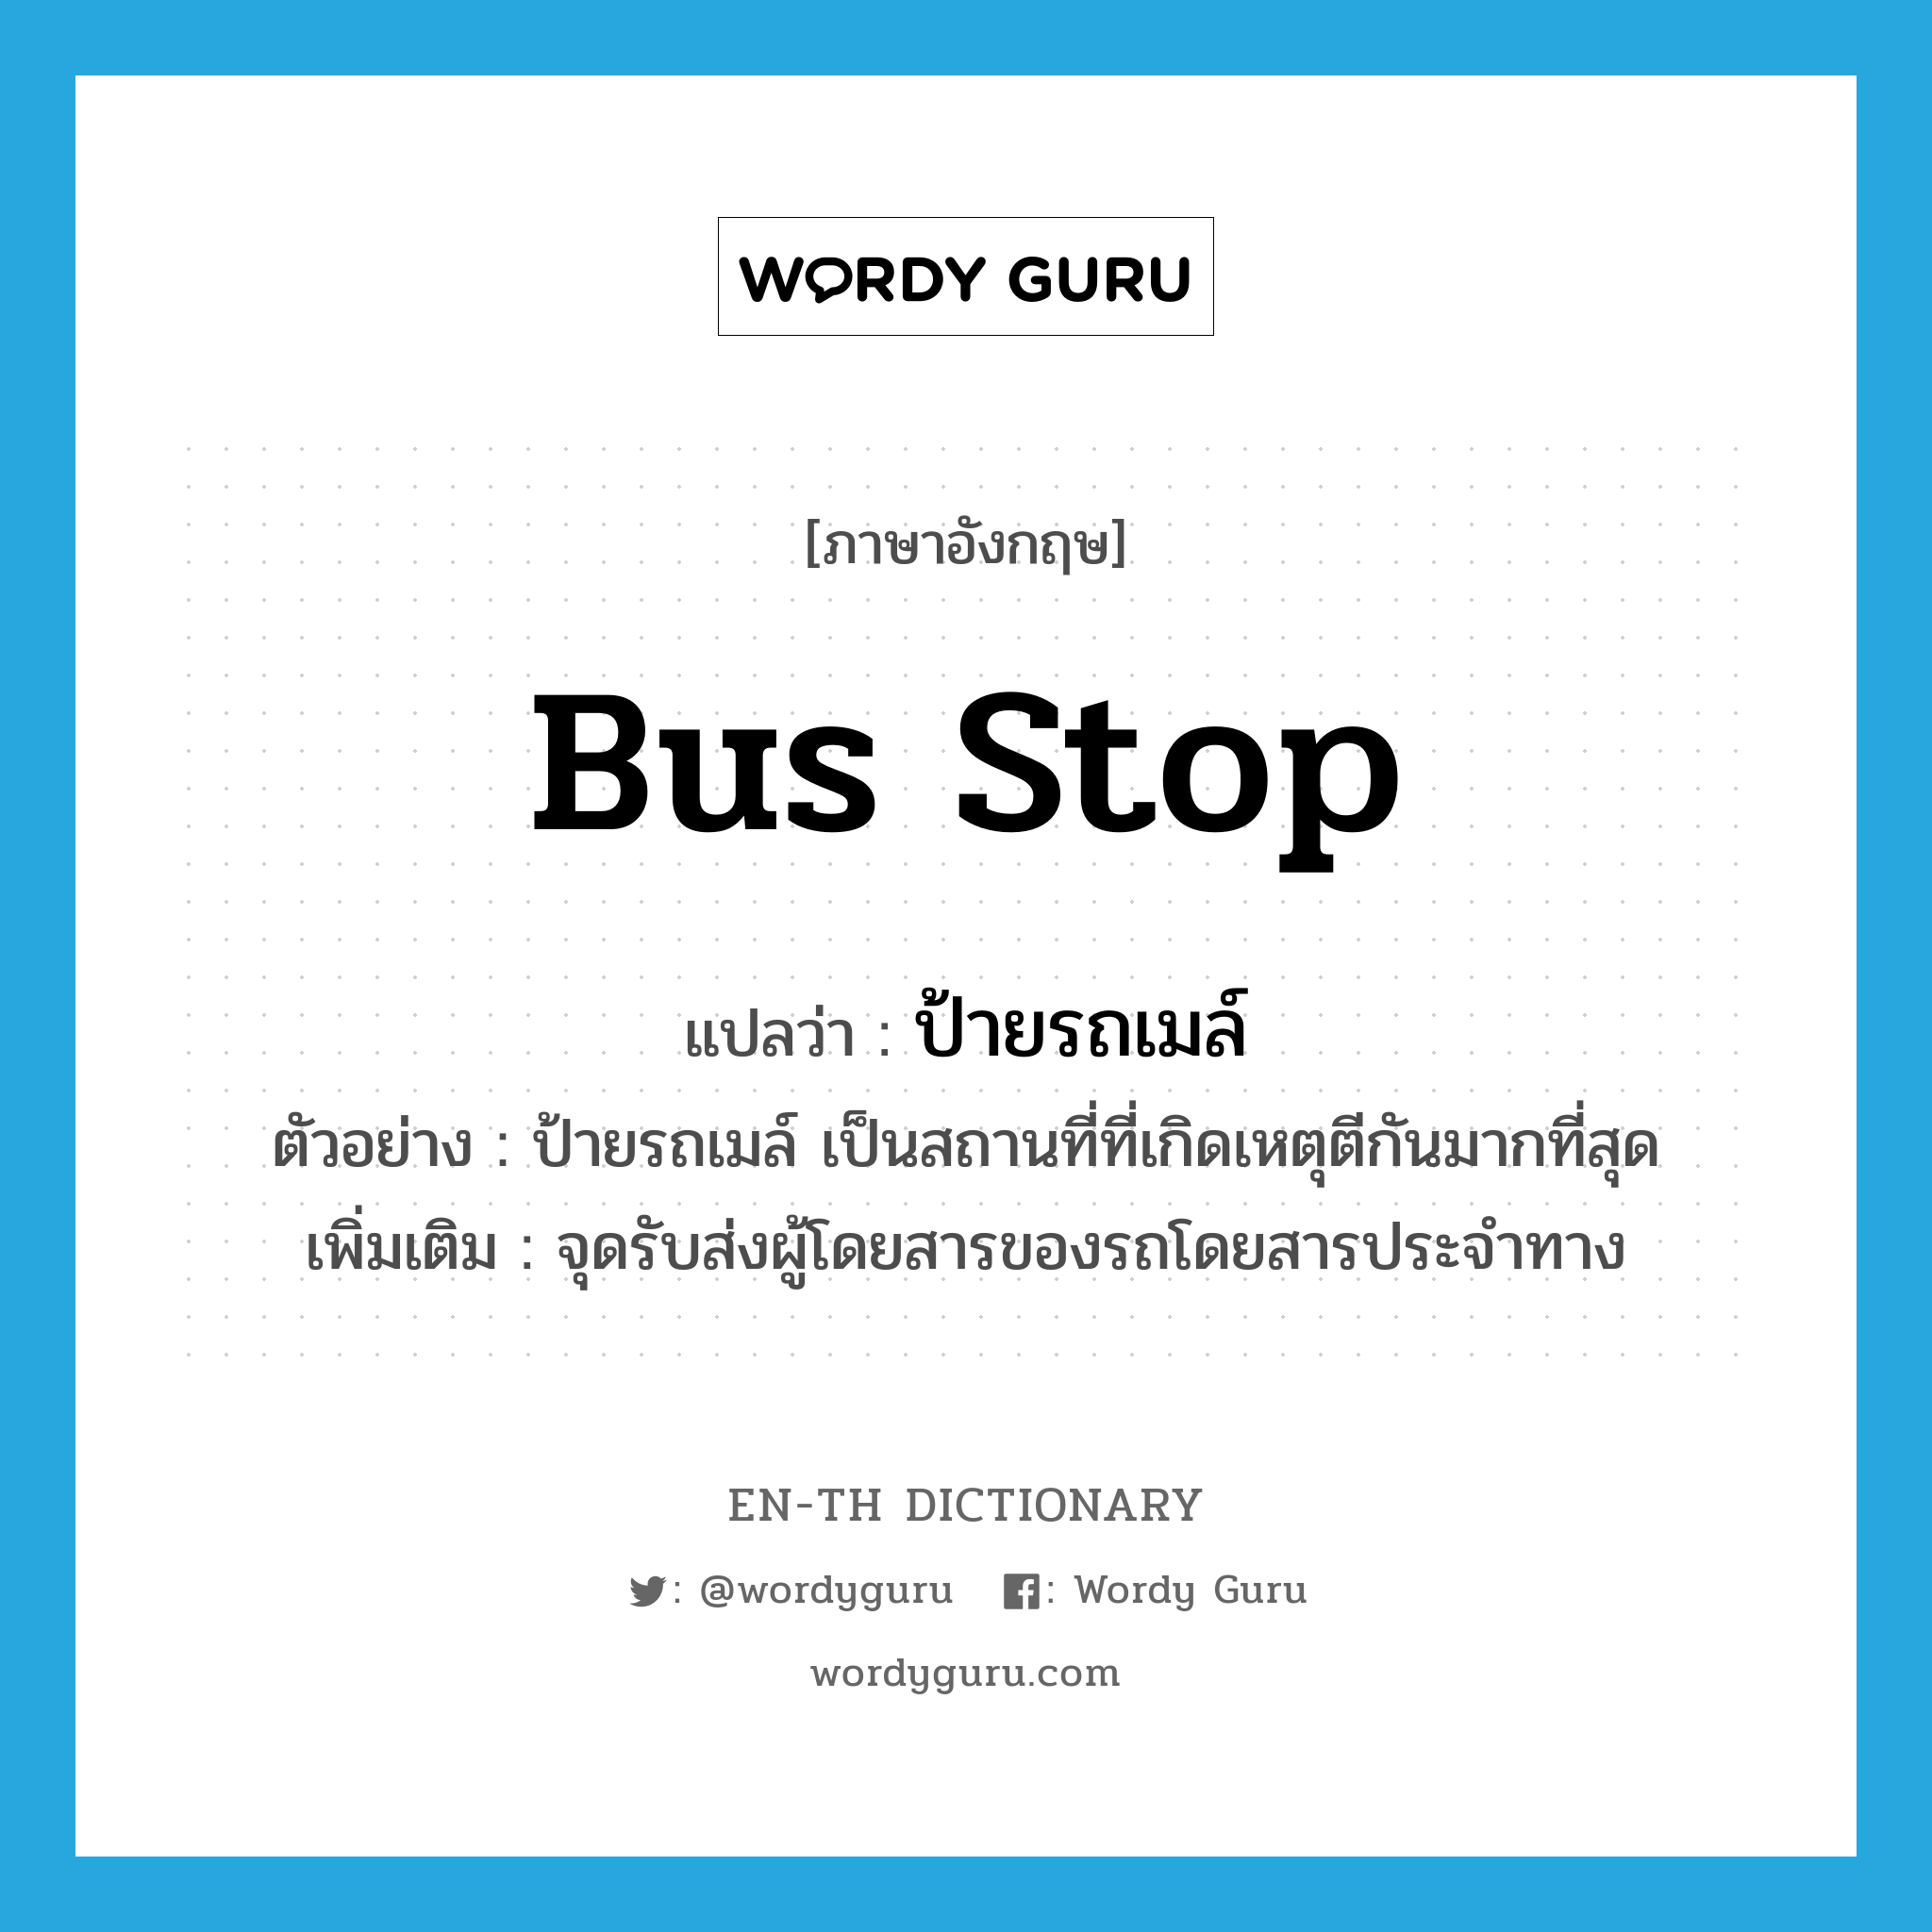 bus stop แปลว่า?, คำศัพท์ภาษาอังกฤษ bus stop แปลว่า ป้ายรถเมล์ ประเภท N ตัวอย่าง ป้ายรถเมล์ เป็นสถานที่ที่เกิดเหตุตีกันมากที่สุด เพิ่มเติม จุดรับส่งผู้โดยสารของรถโดยสารประจำทาง หมวด N